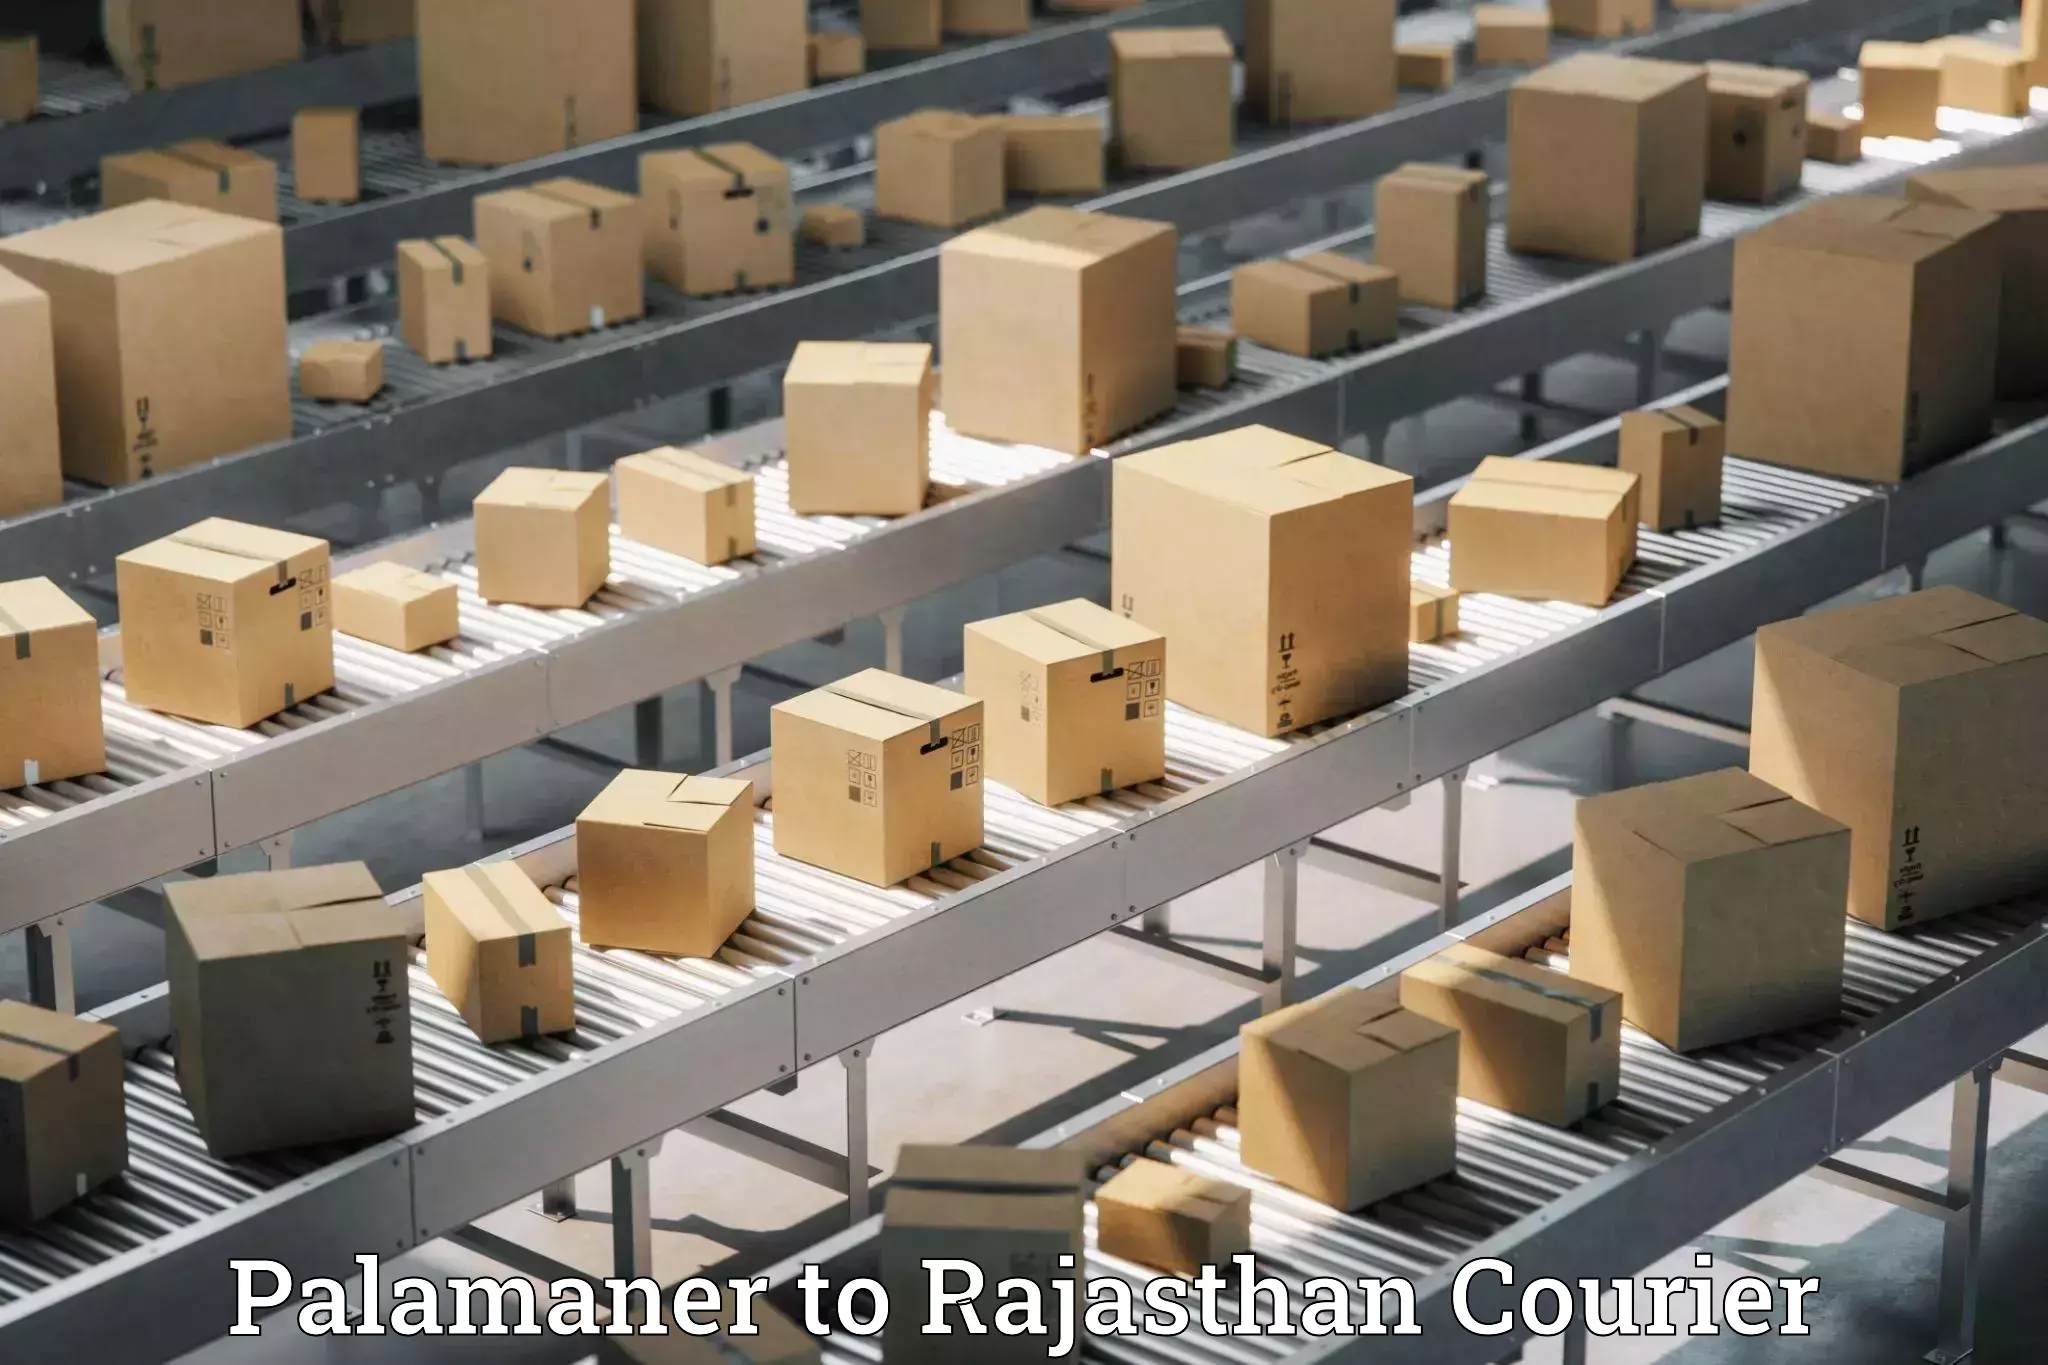 High-capacity shipping options Palamaner to IIIT Kota